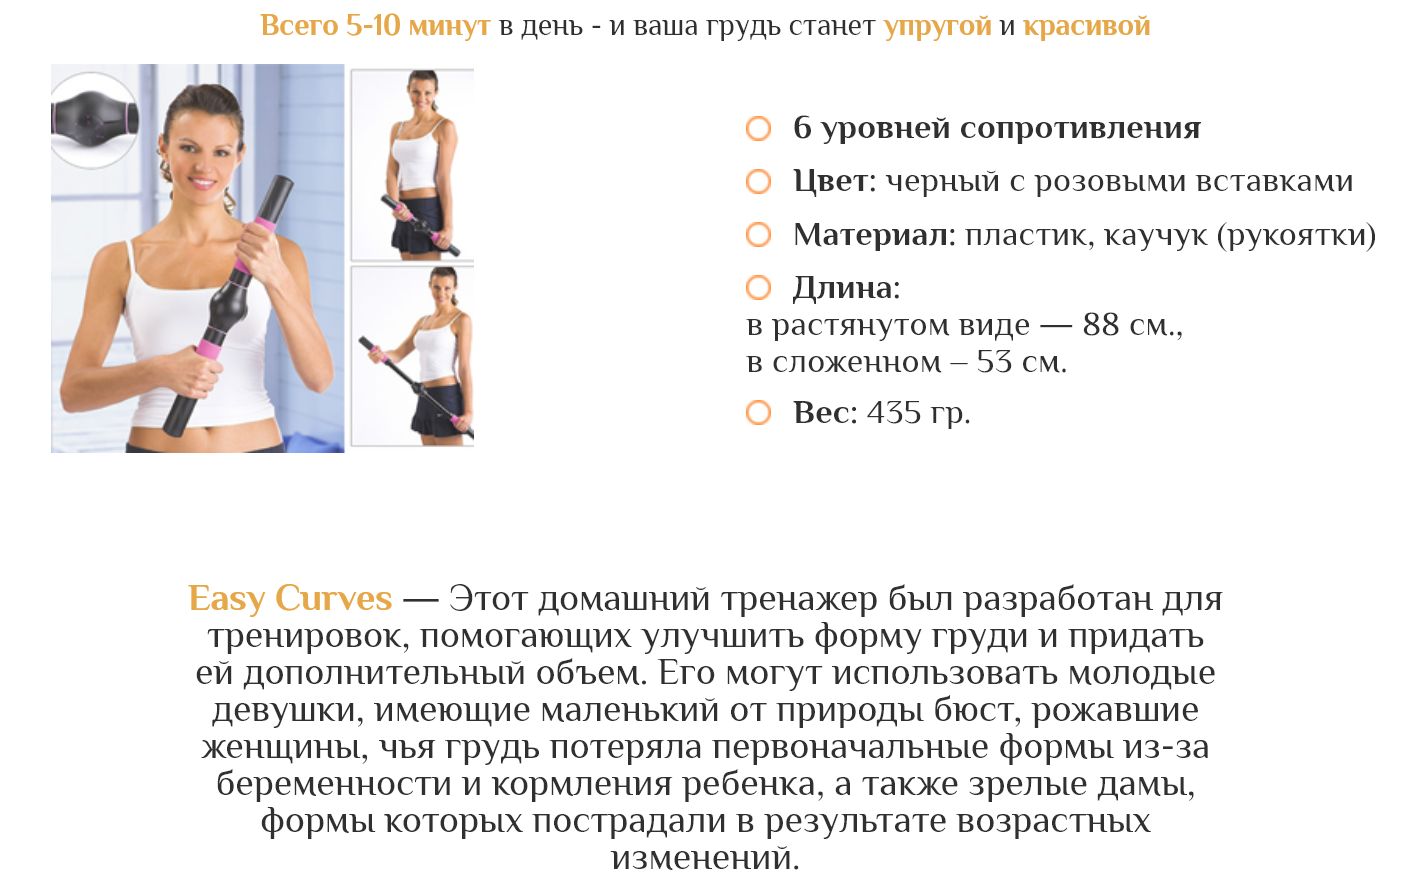 Характеристики тренажера для груди Easy Curves